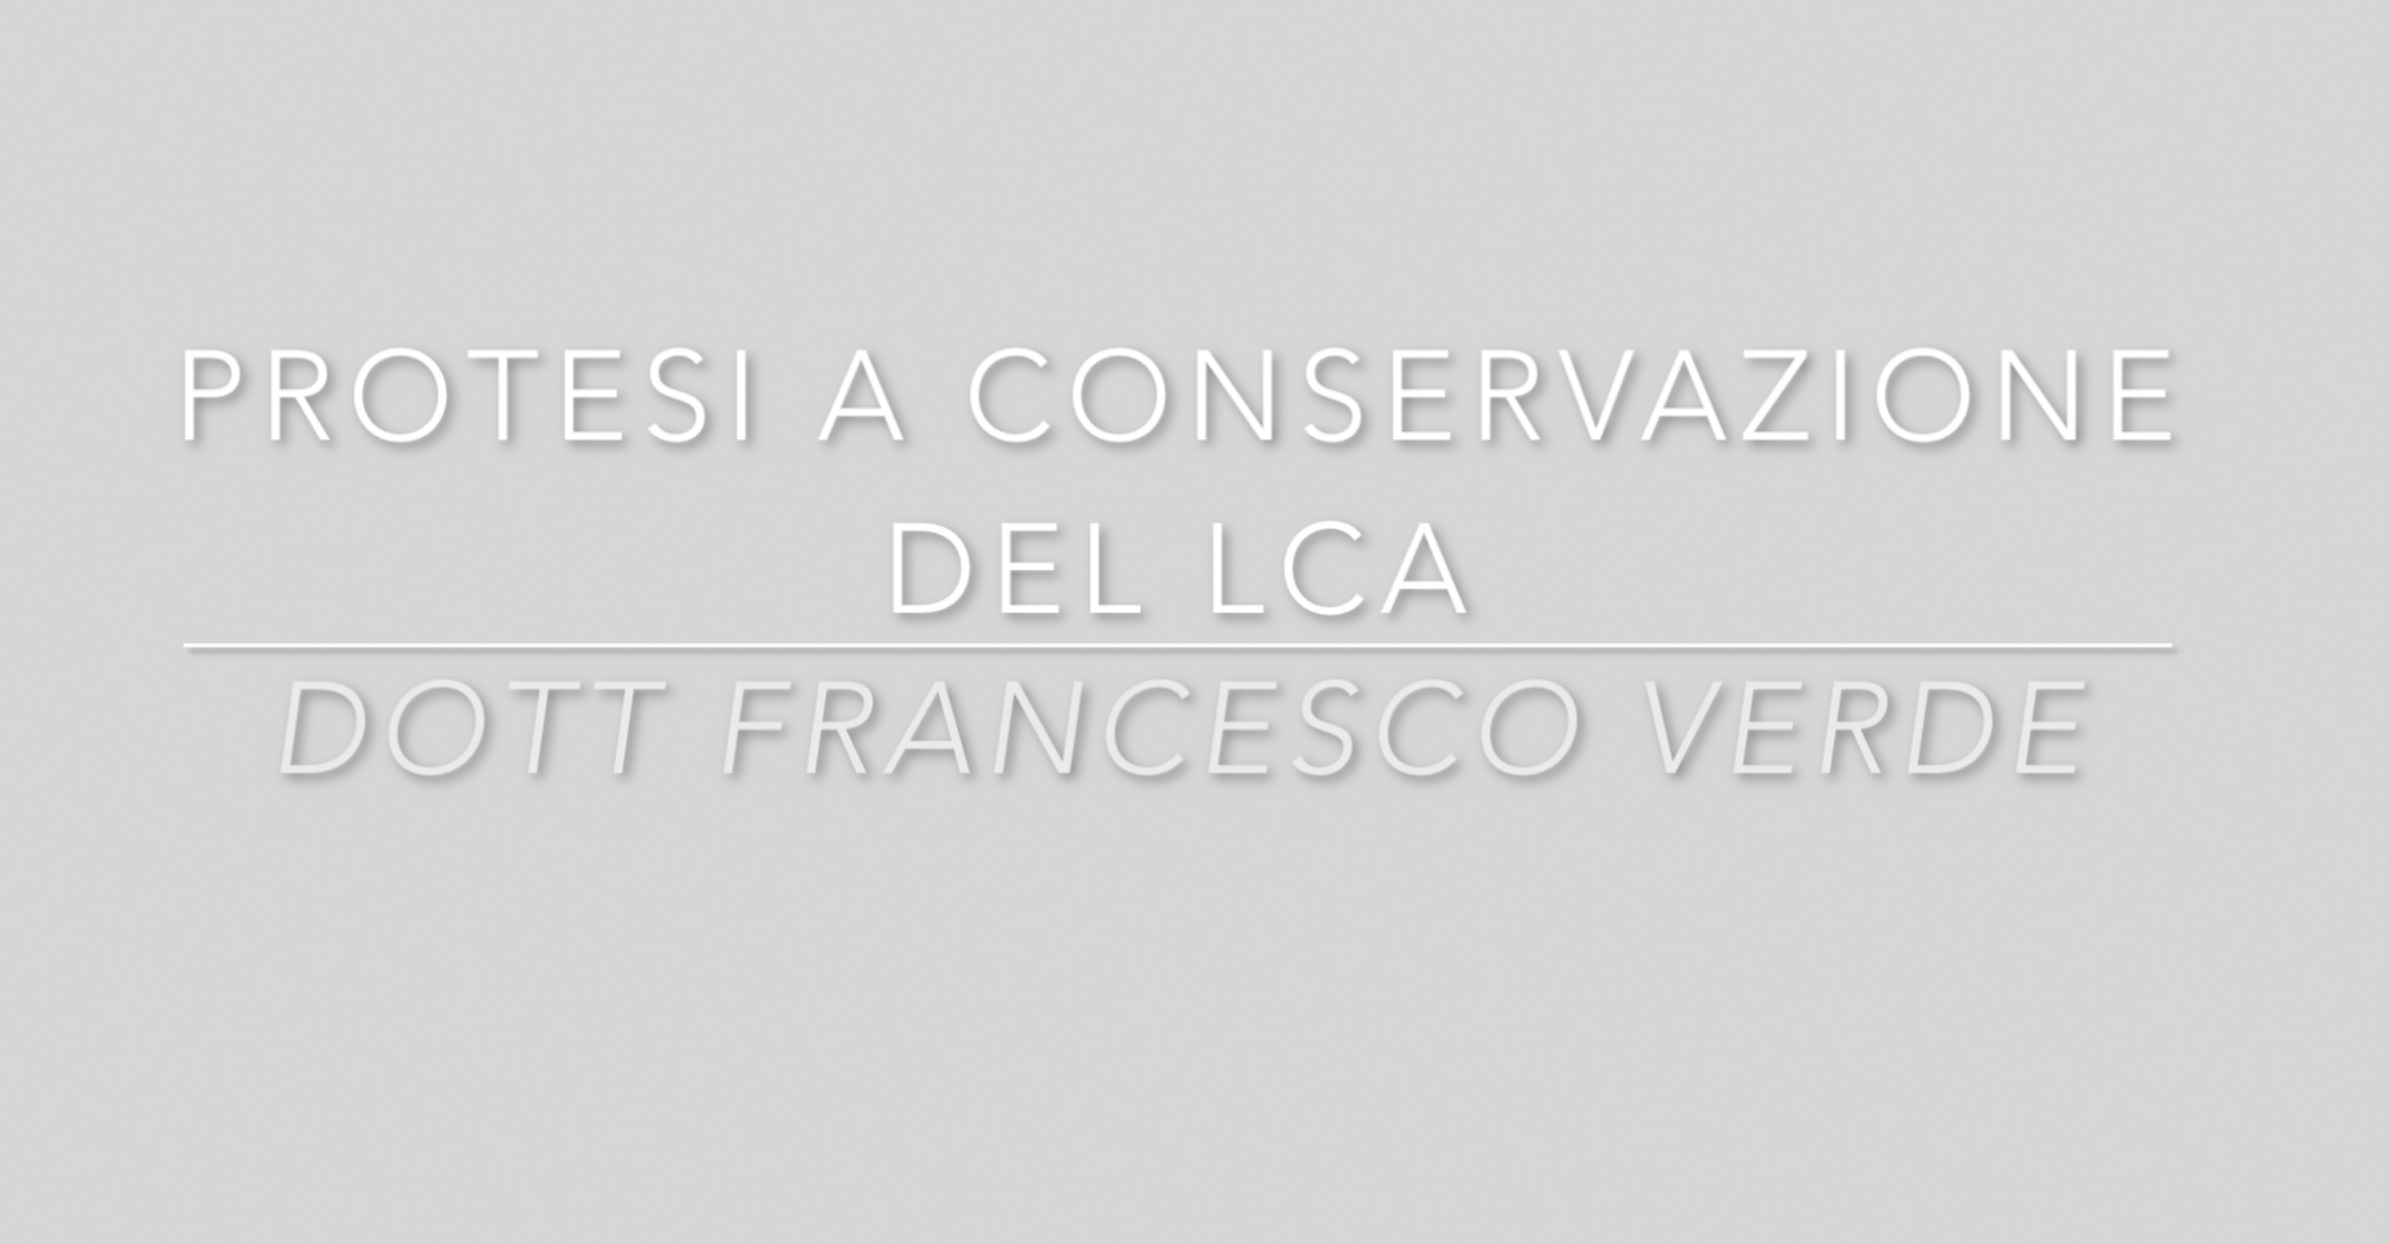 protesi-conservazione-LCA-francesco-verde